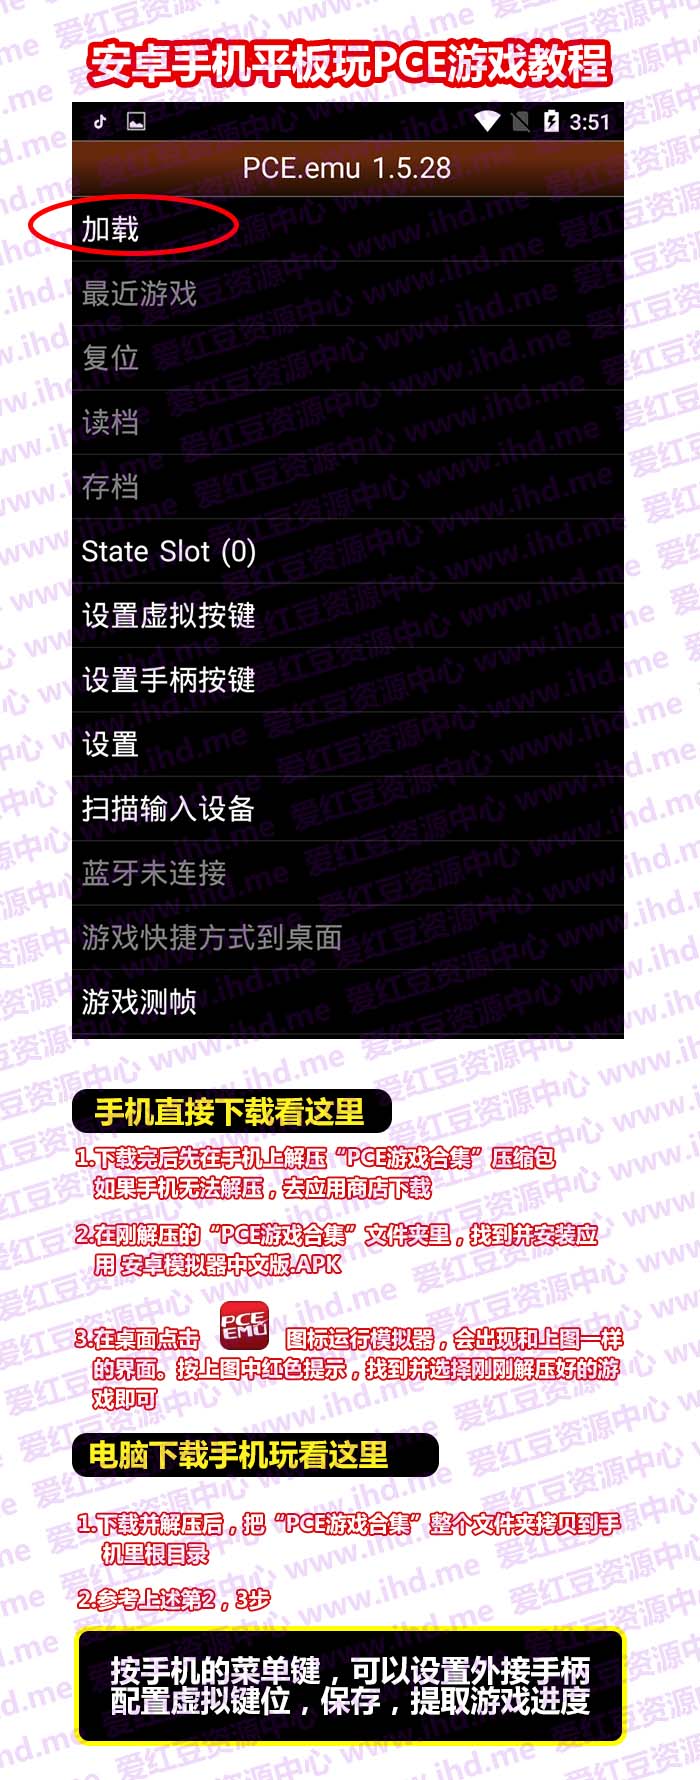 PCE游戏全集+精选打包下载 中文游戏名 详细分类含中文模拟器和操作说明 介绍图片